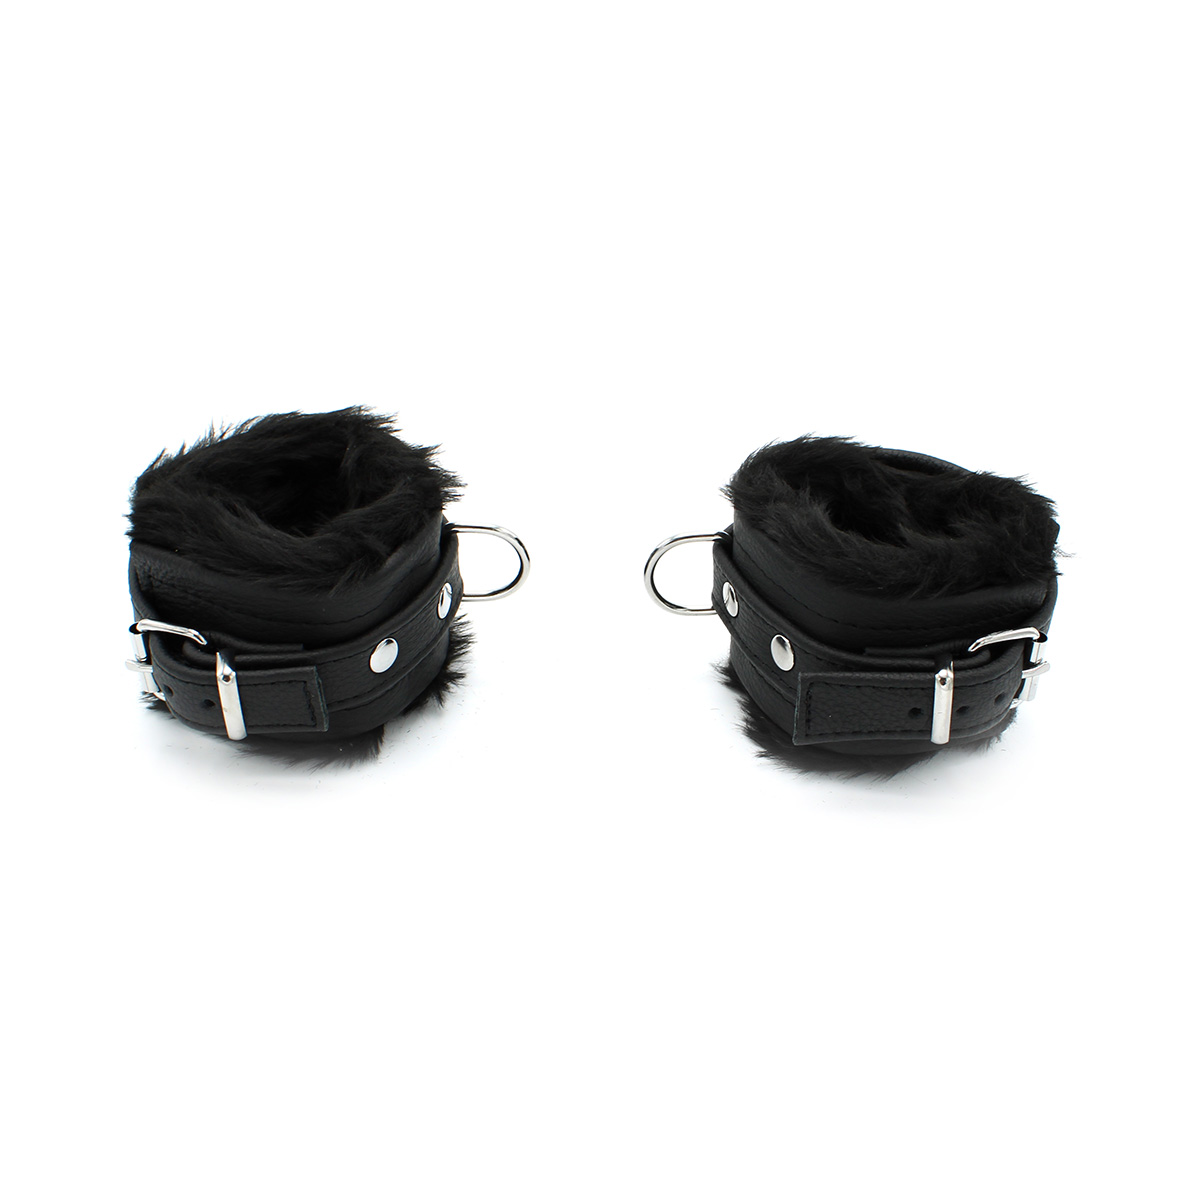 Fluffy-Inside-Black-Leather-Handcuffs-134-KIO-0344-2